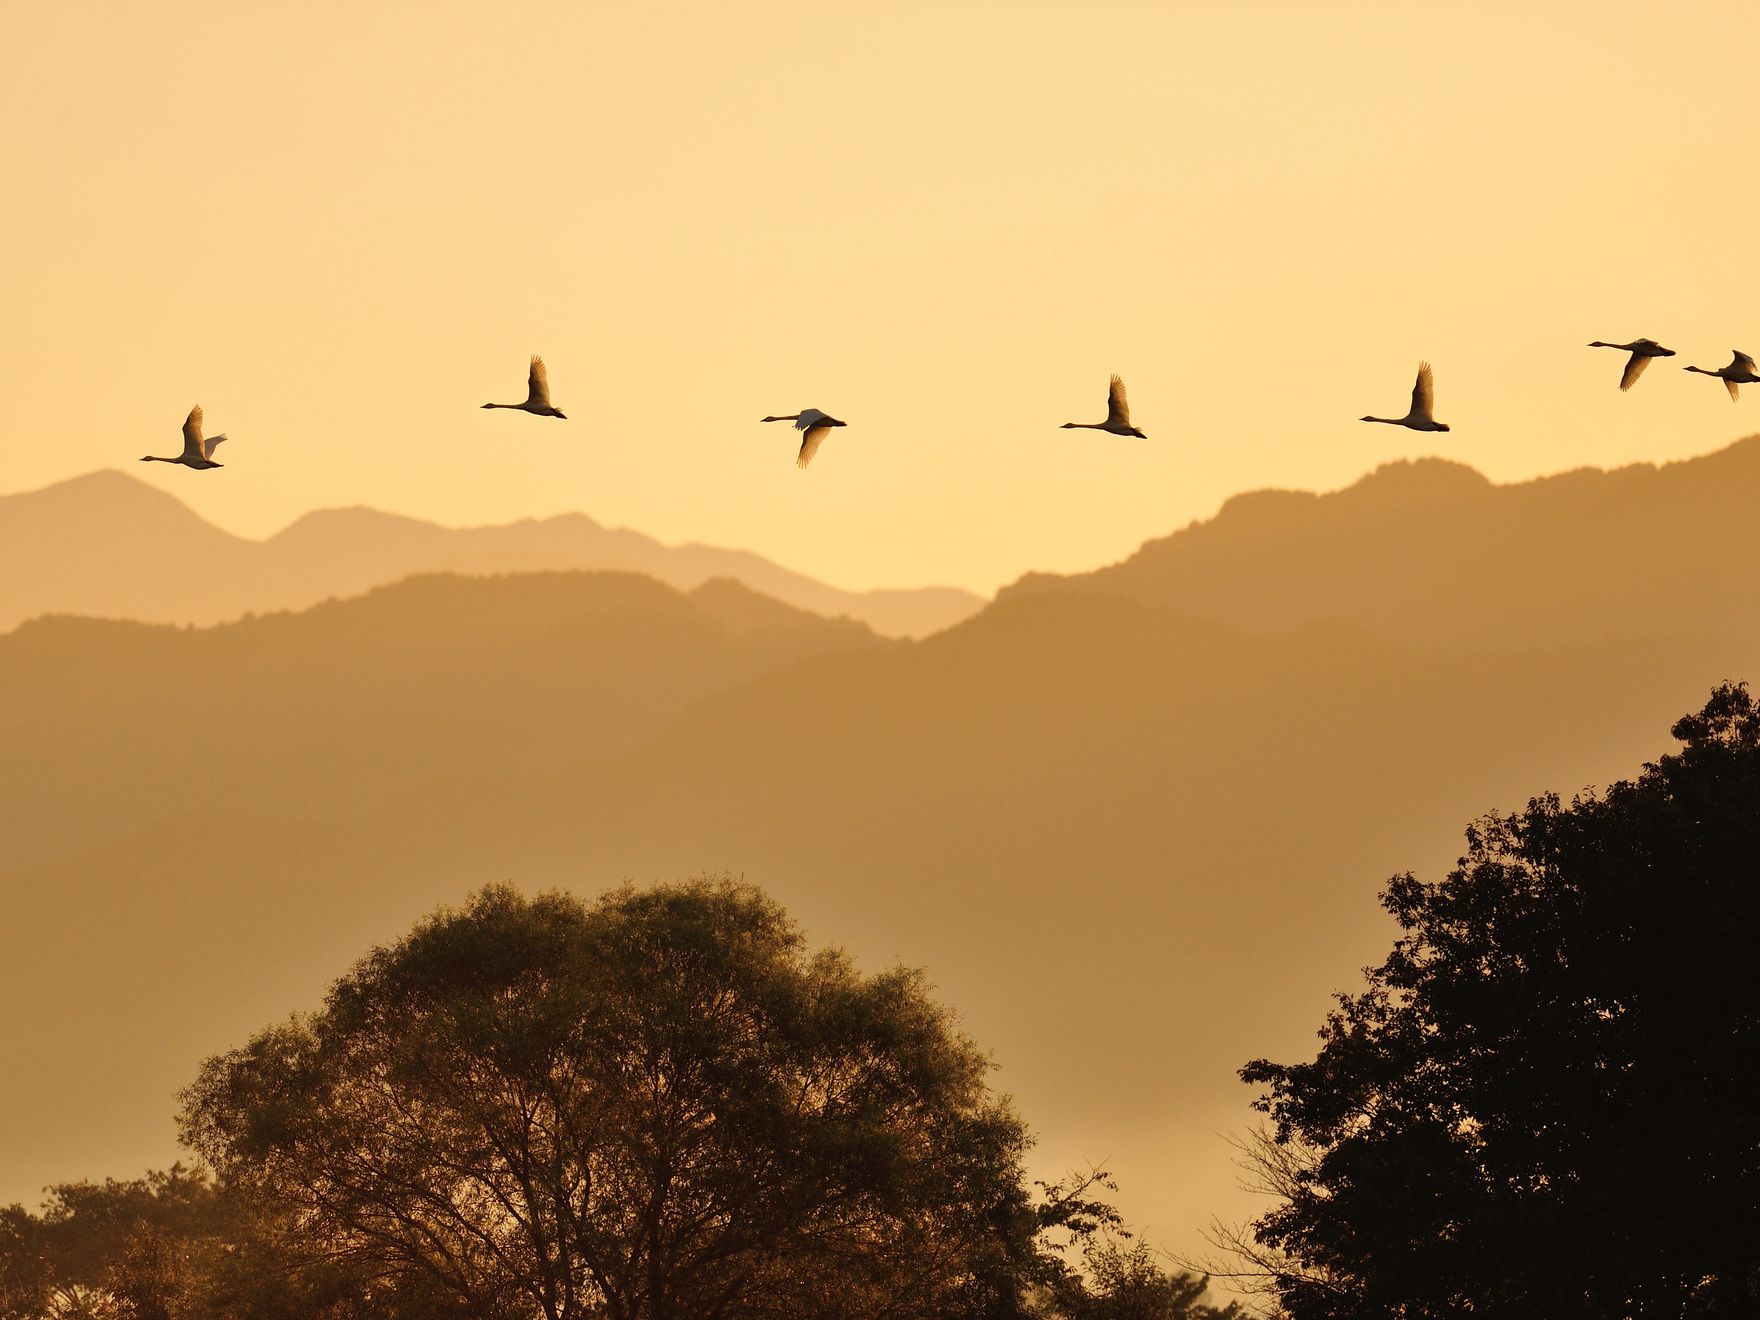 渡り鳥が飛ぶ、日本昔話のような風景